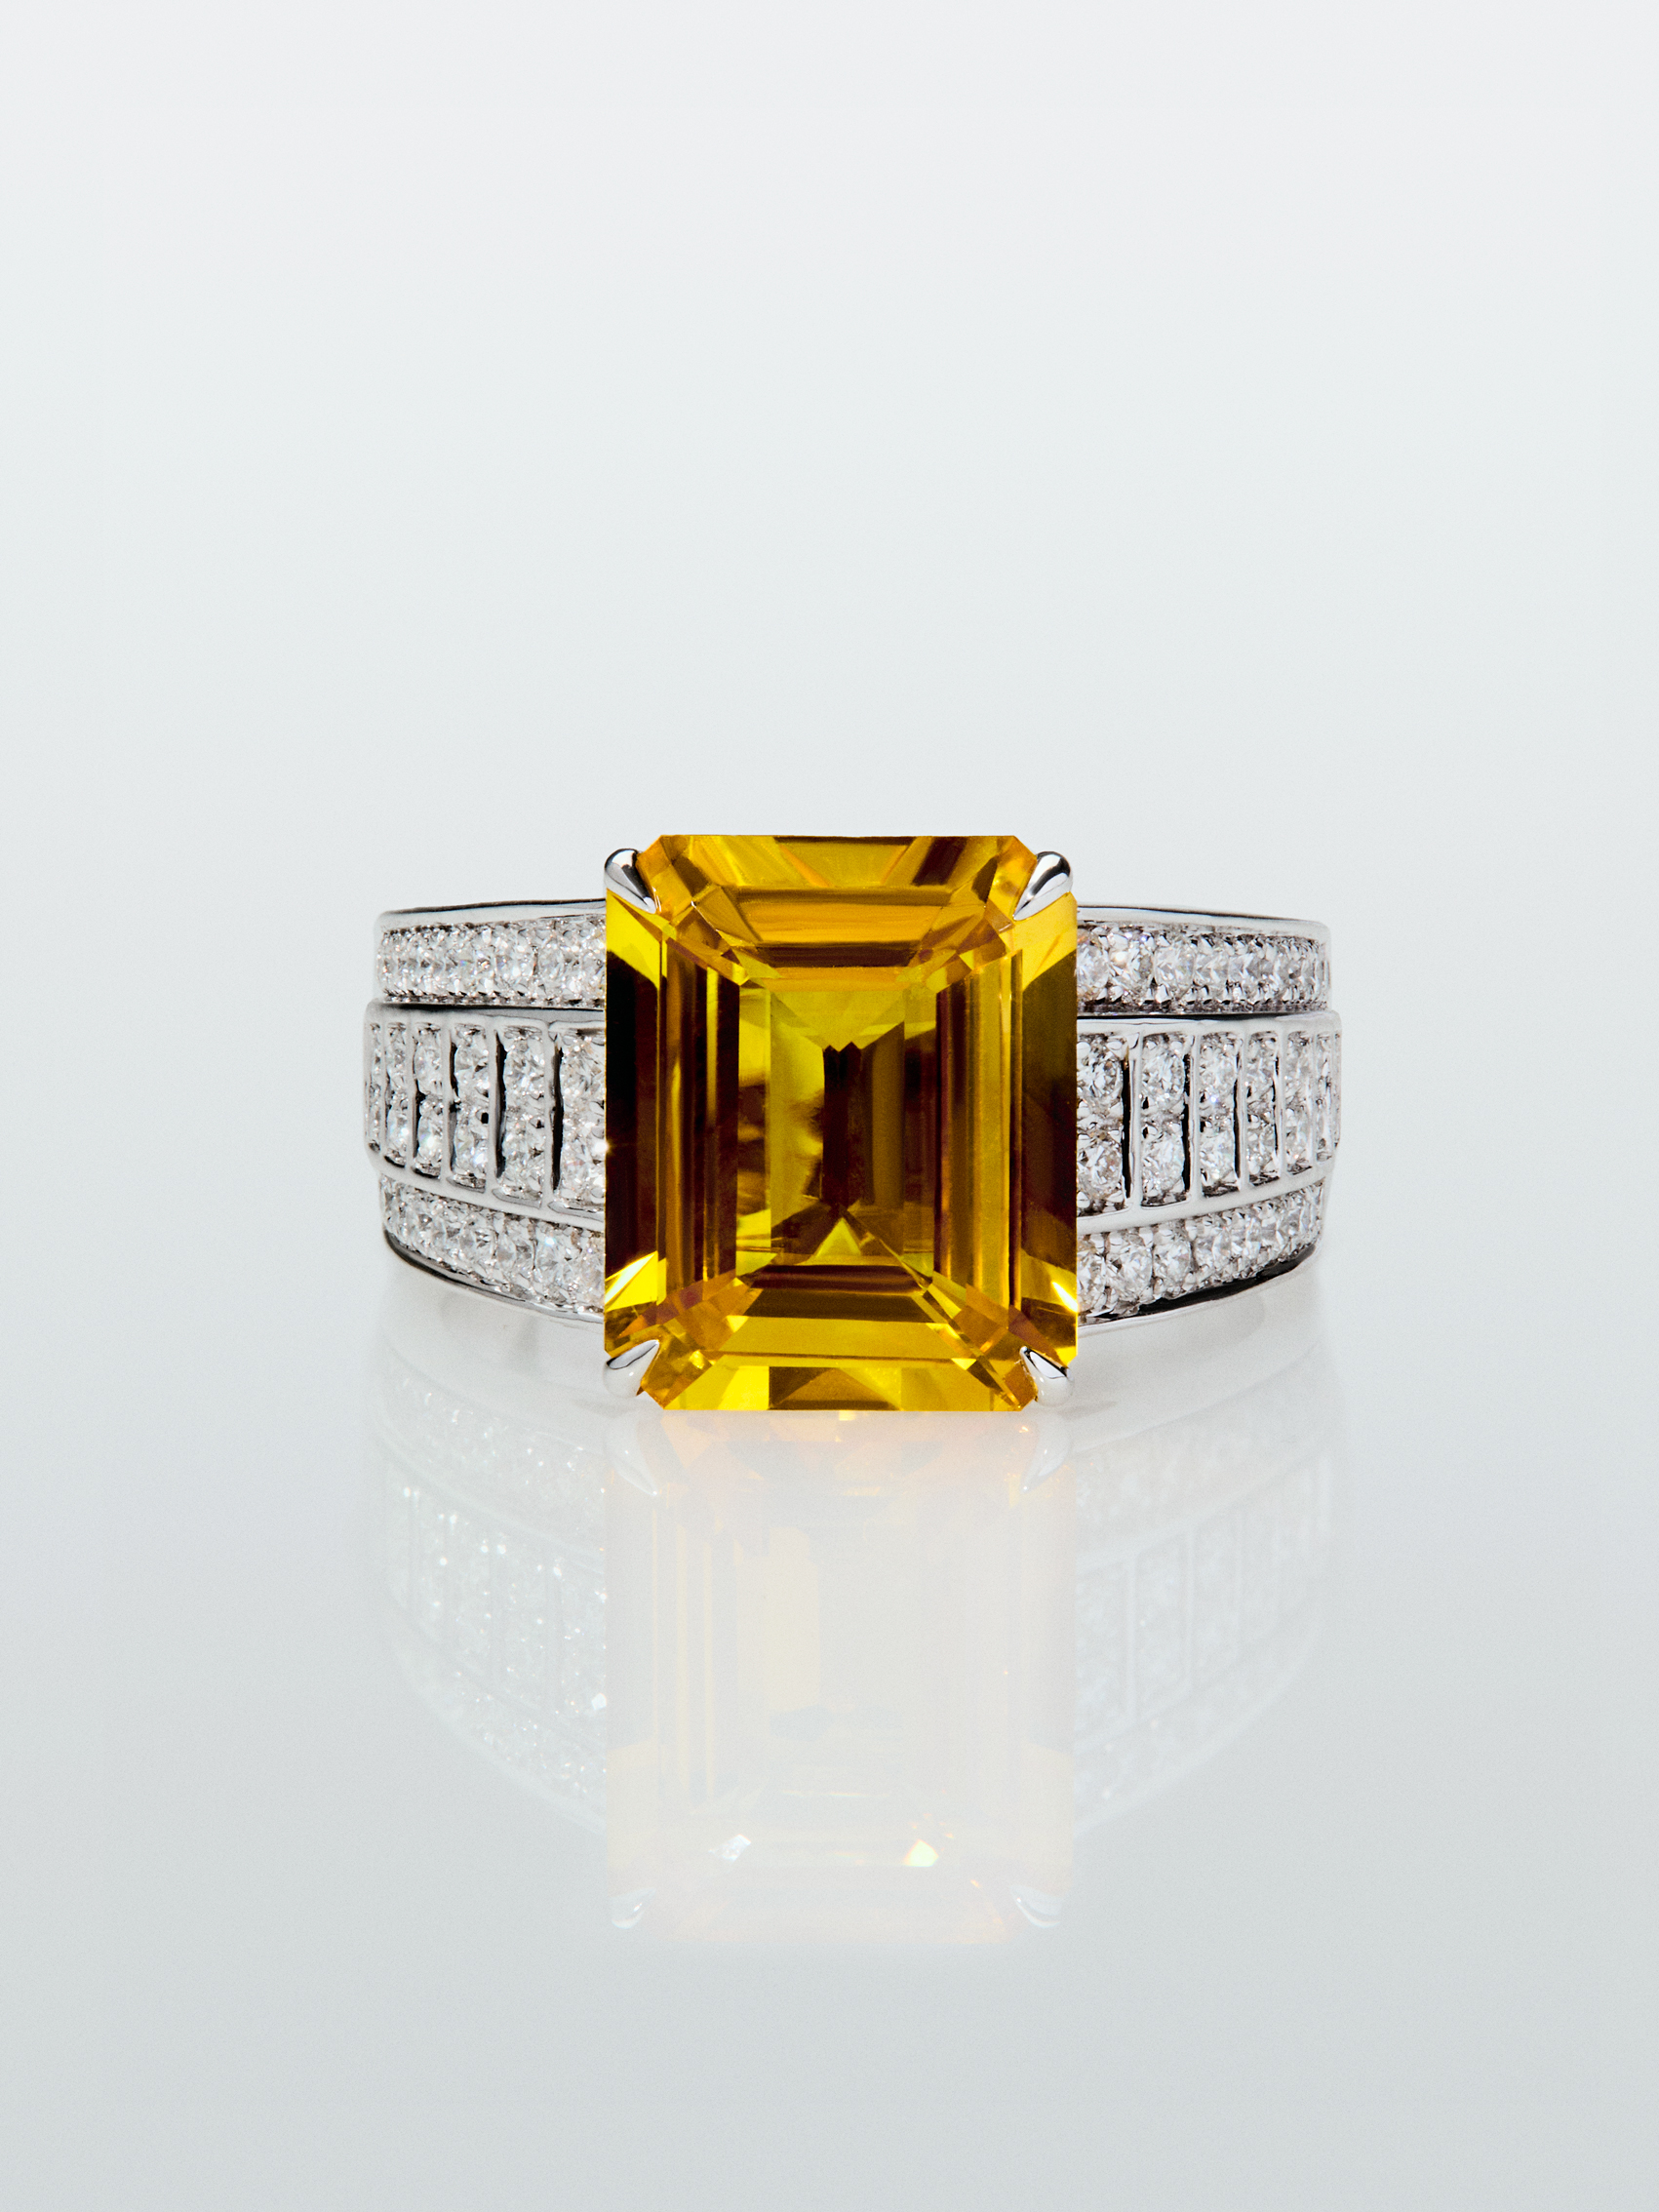 Anillo de oro blanco de 18K con zafiro amarillo en talla octogonal de 5,548 cts y 70 diamantes en talla brillante con un total de 0,45 cts